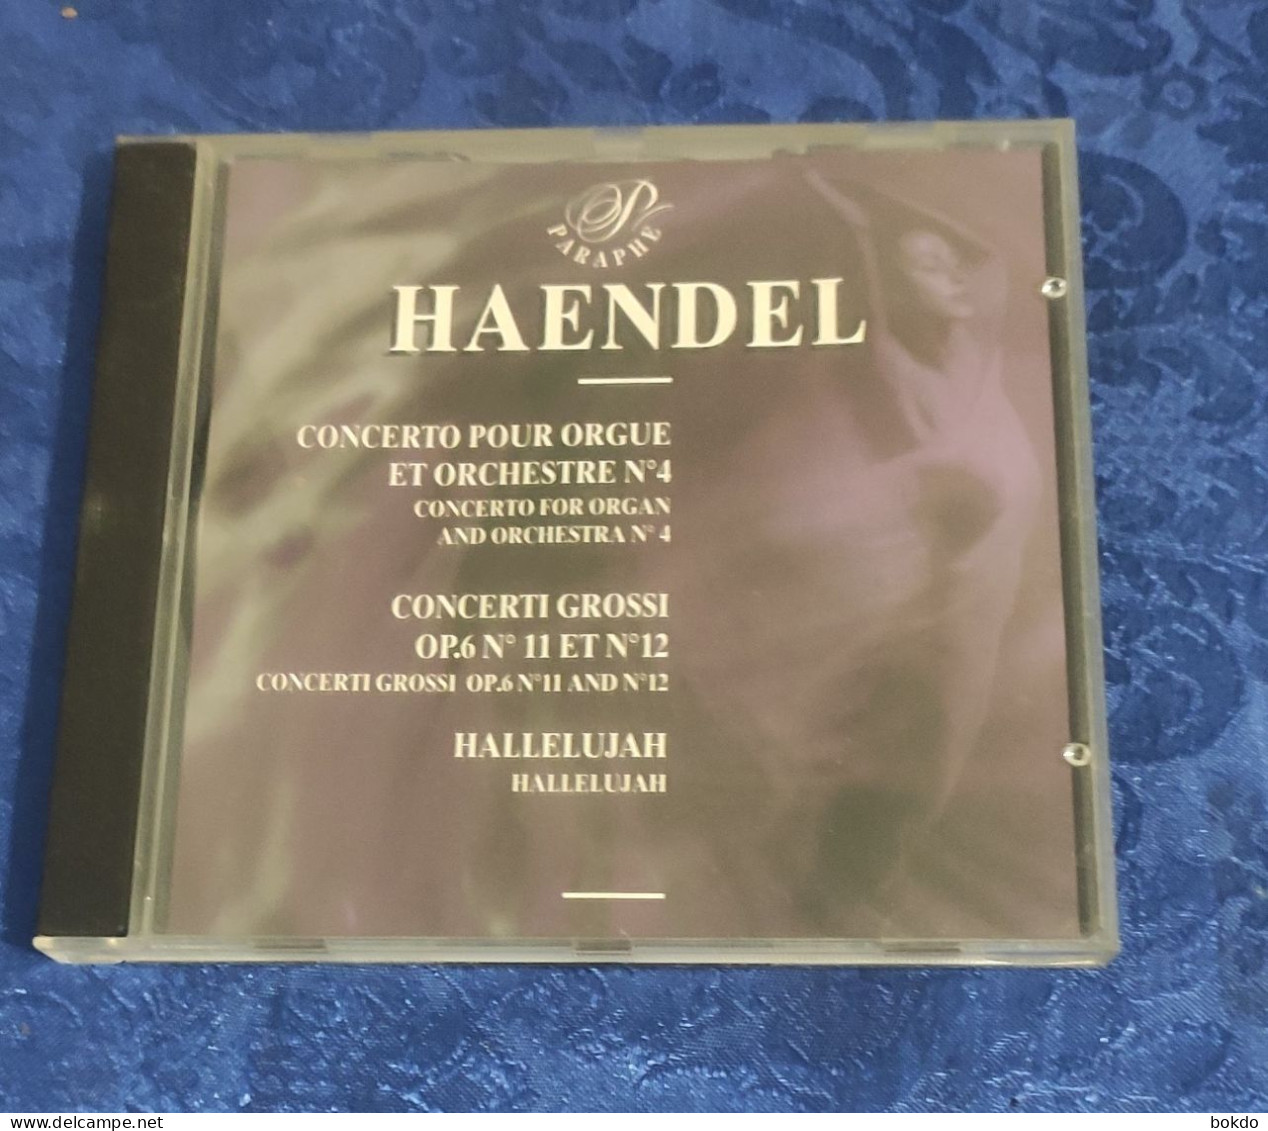 HAENDEL - Concerto Pour Orgue - Concerti Grossi - Hallelujah - Classical